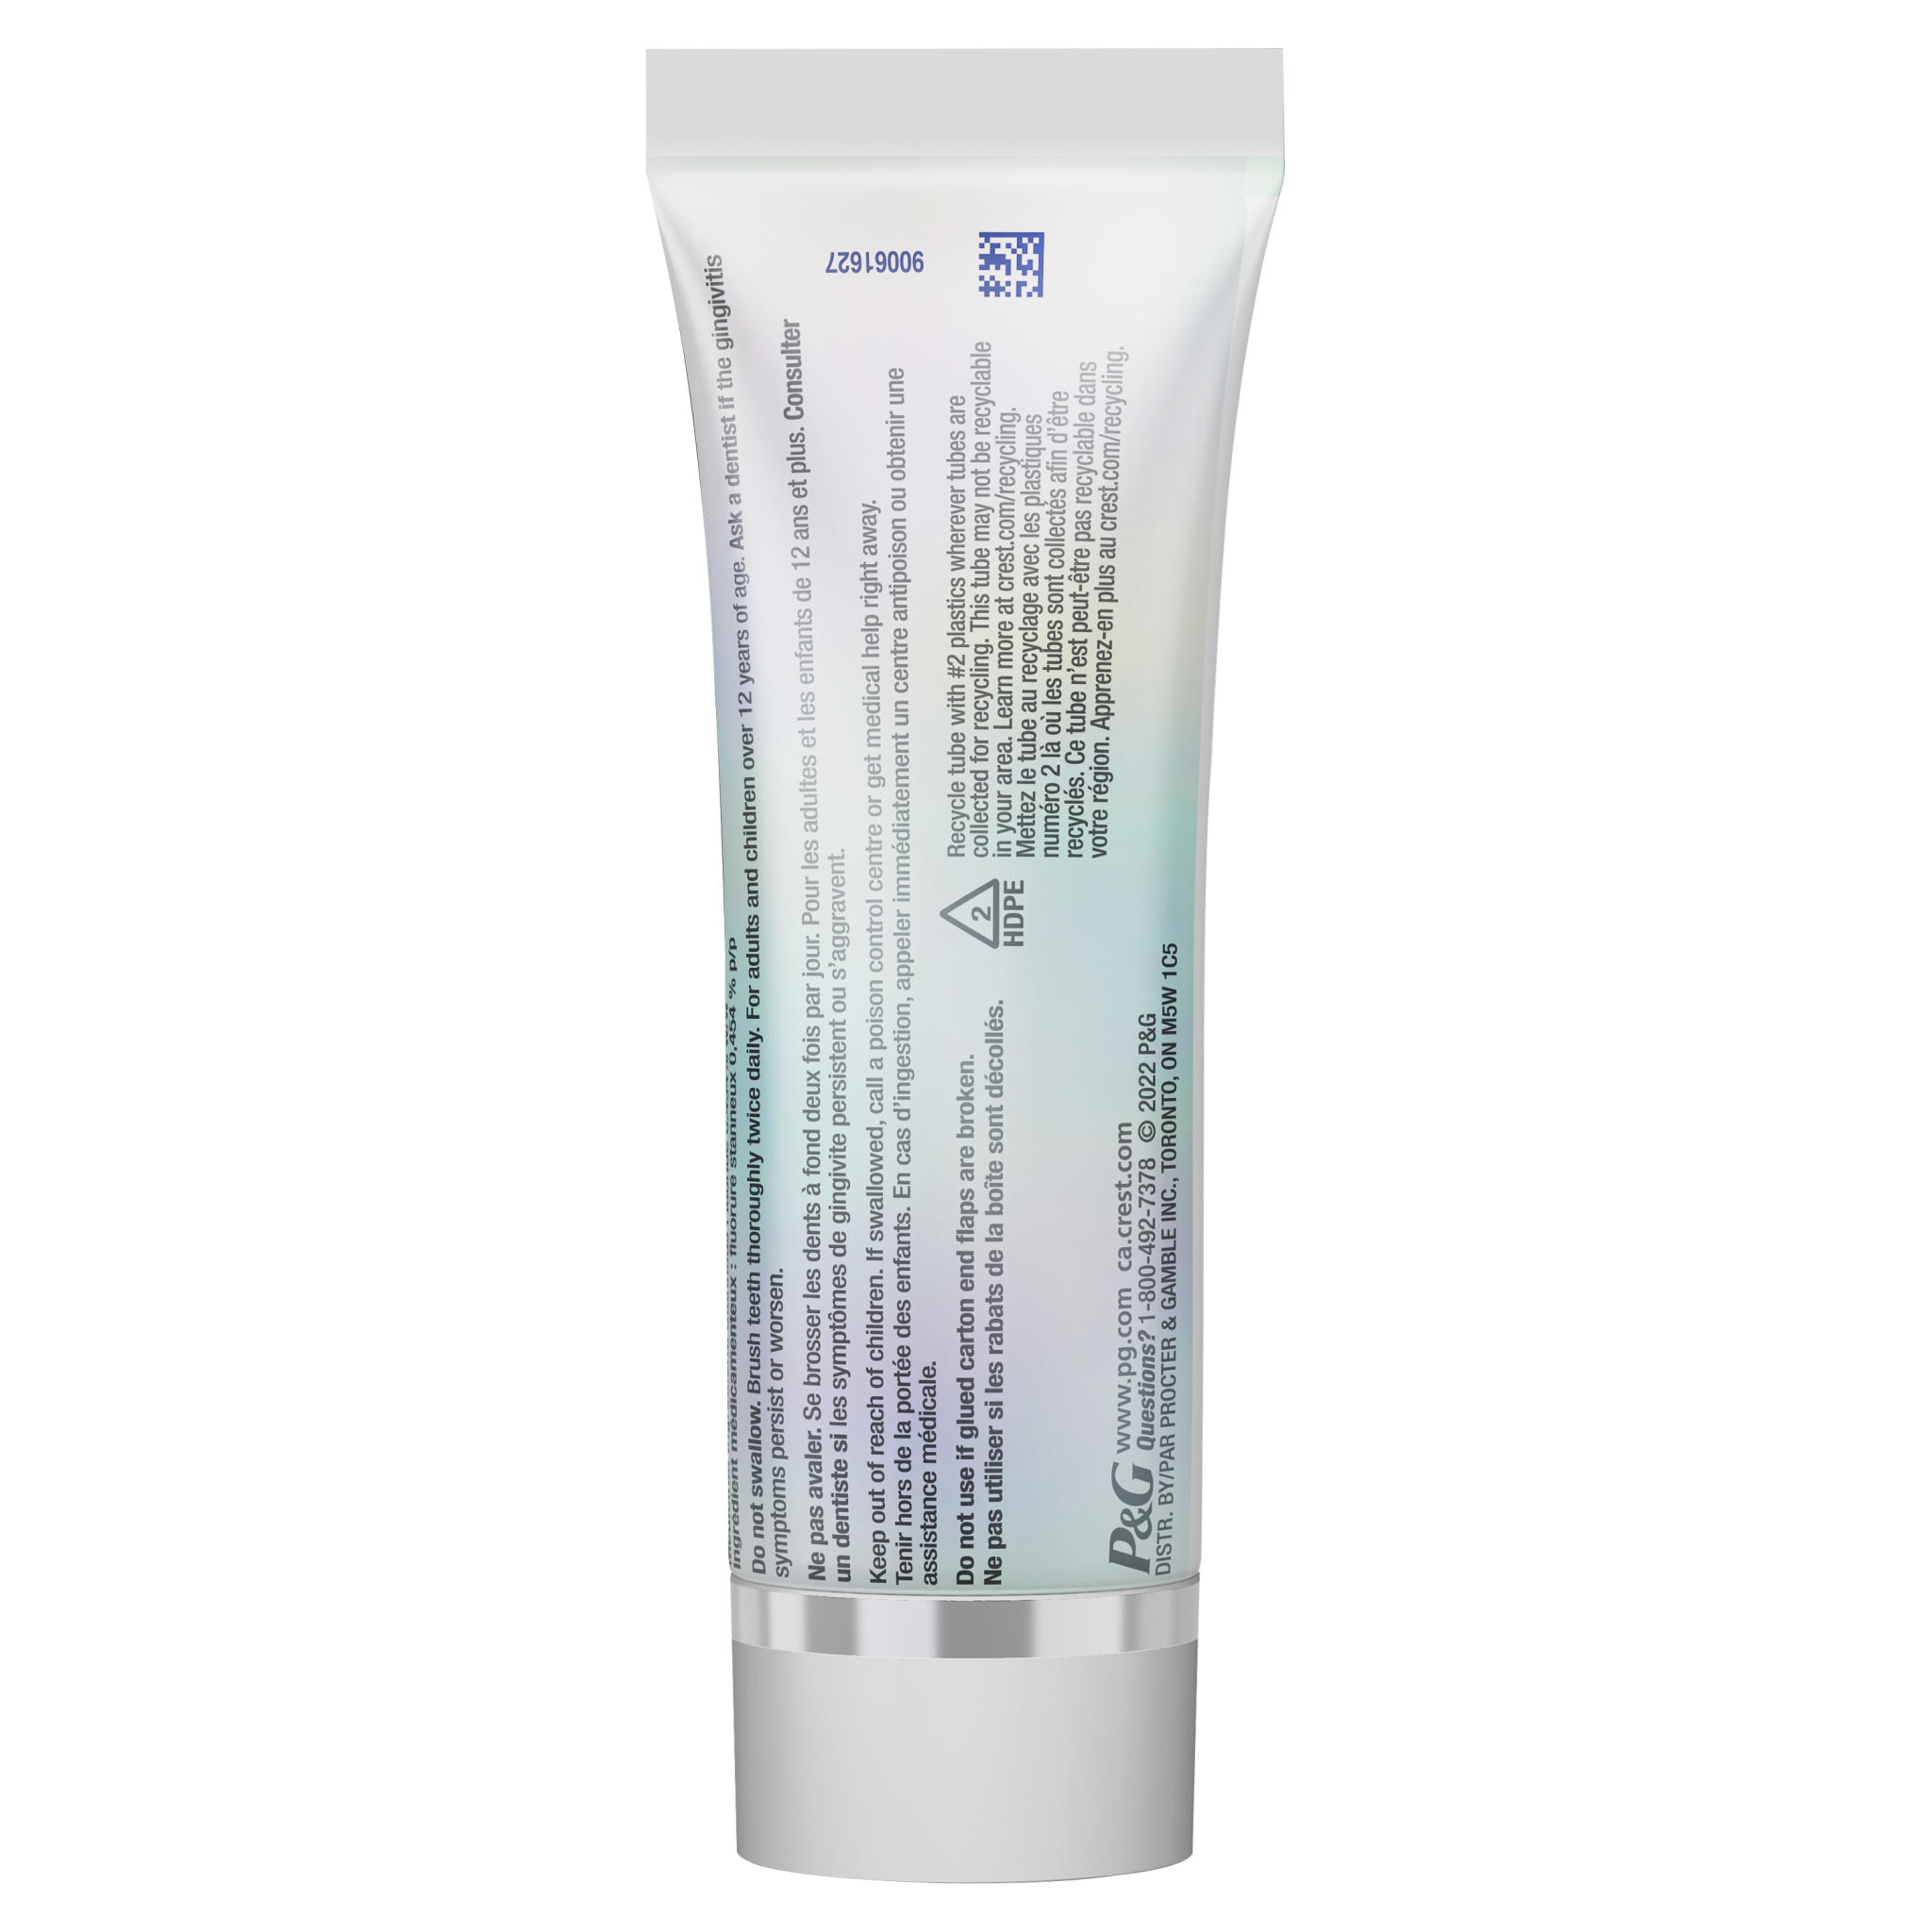 Crest Pro-health Advanced Gum Restore Toothpaste, Whitening 90ML - 1